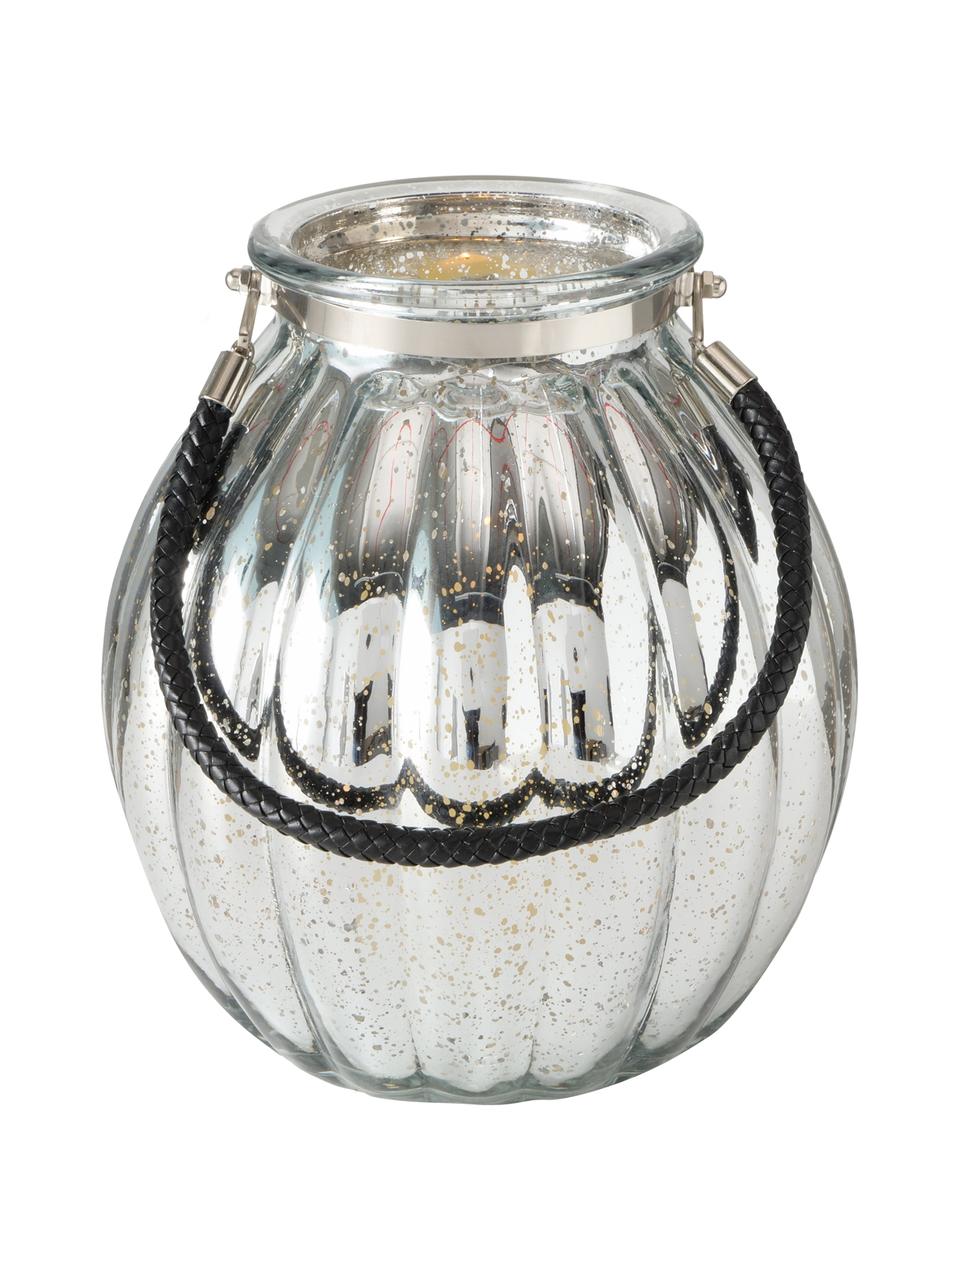 Windlicht Tubby aus verspiegeltem Glas, Windlicht: Glas, lackiert, Griff: Kunstleder, Silberfarben, Schwarz, Ø 22 x H 25 cm